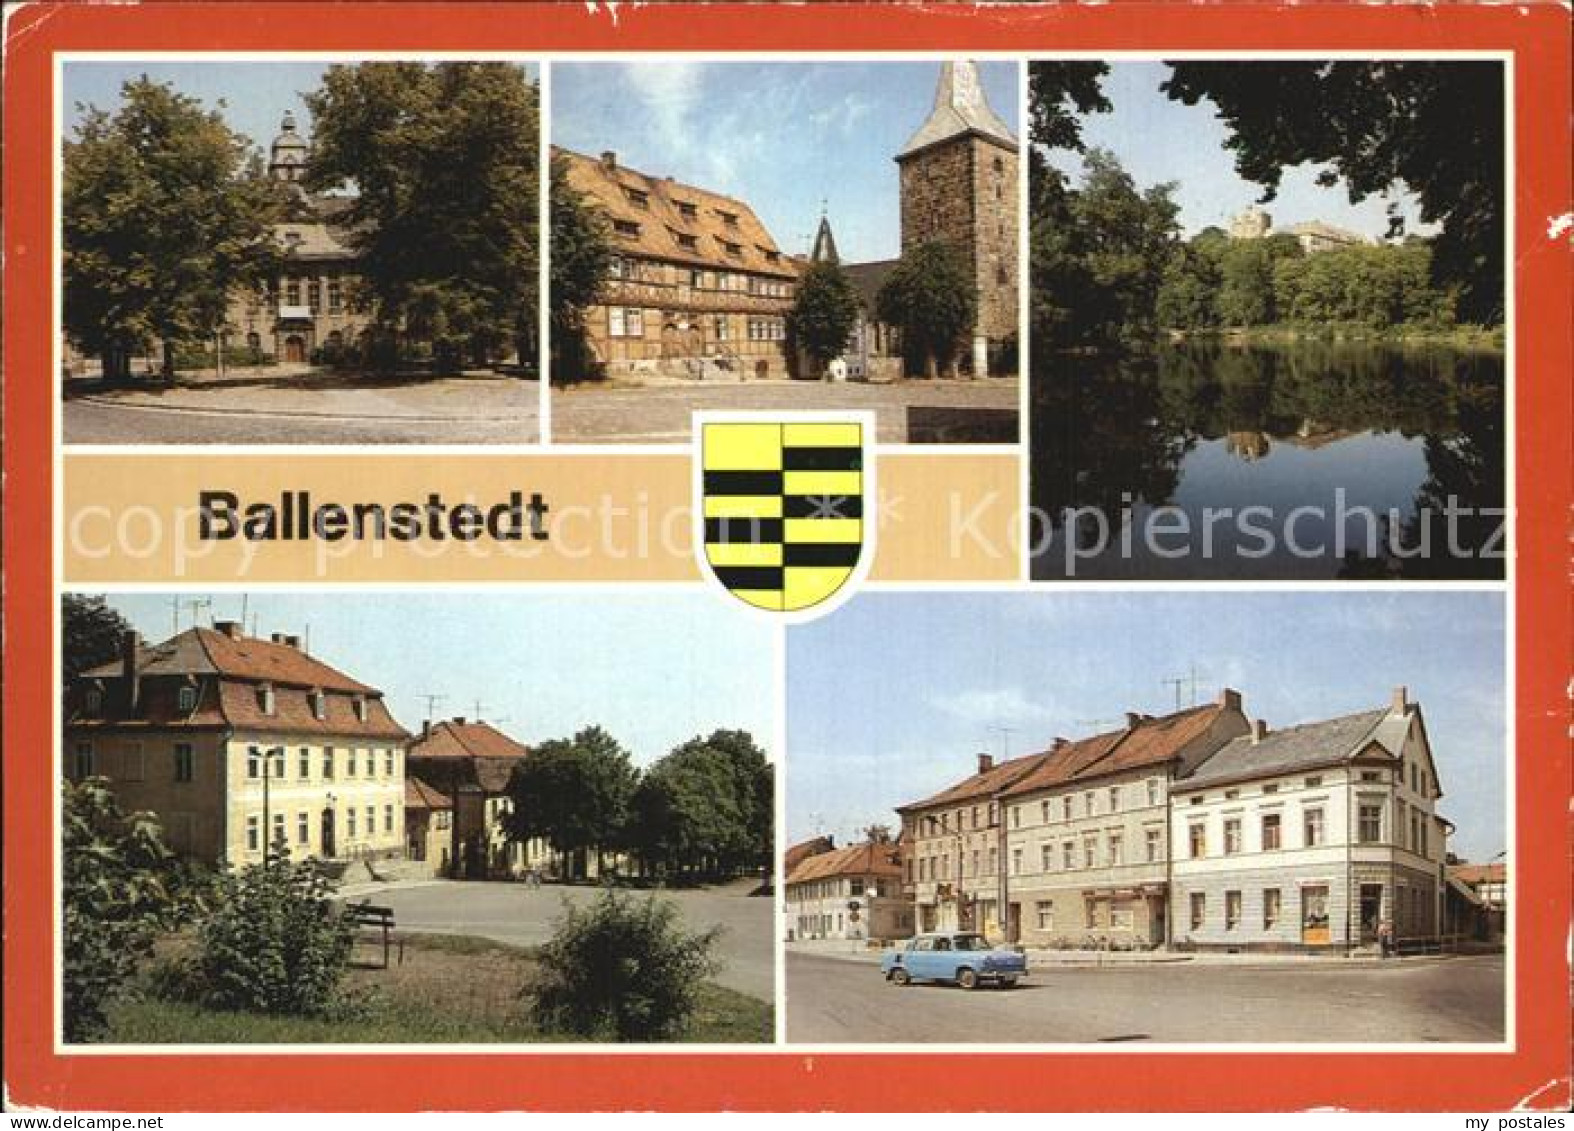 72416164 Ballenstedt Rathaus Alter Markt Schlossteich Wihelm Pieck Allee Ballens - Ballenstedt